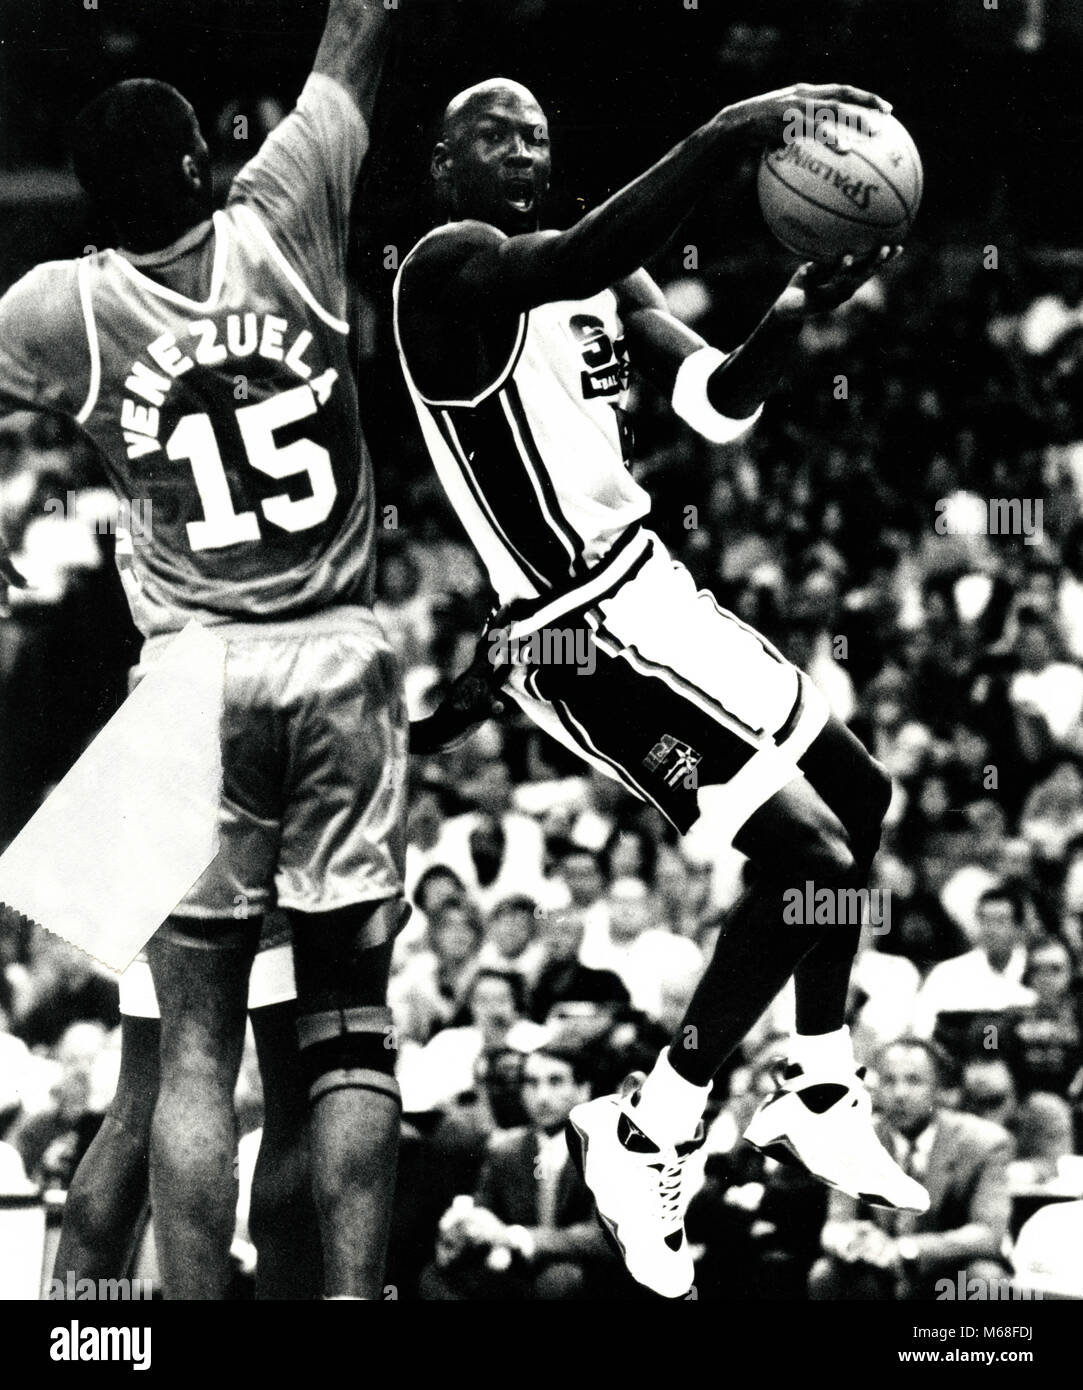 Noi giocatore di pallacanestro Michael Jordan, 1993 Foto Stock